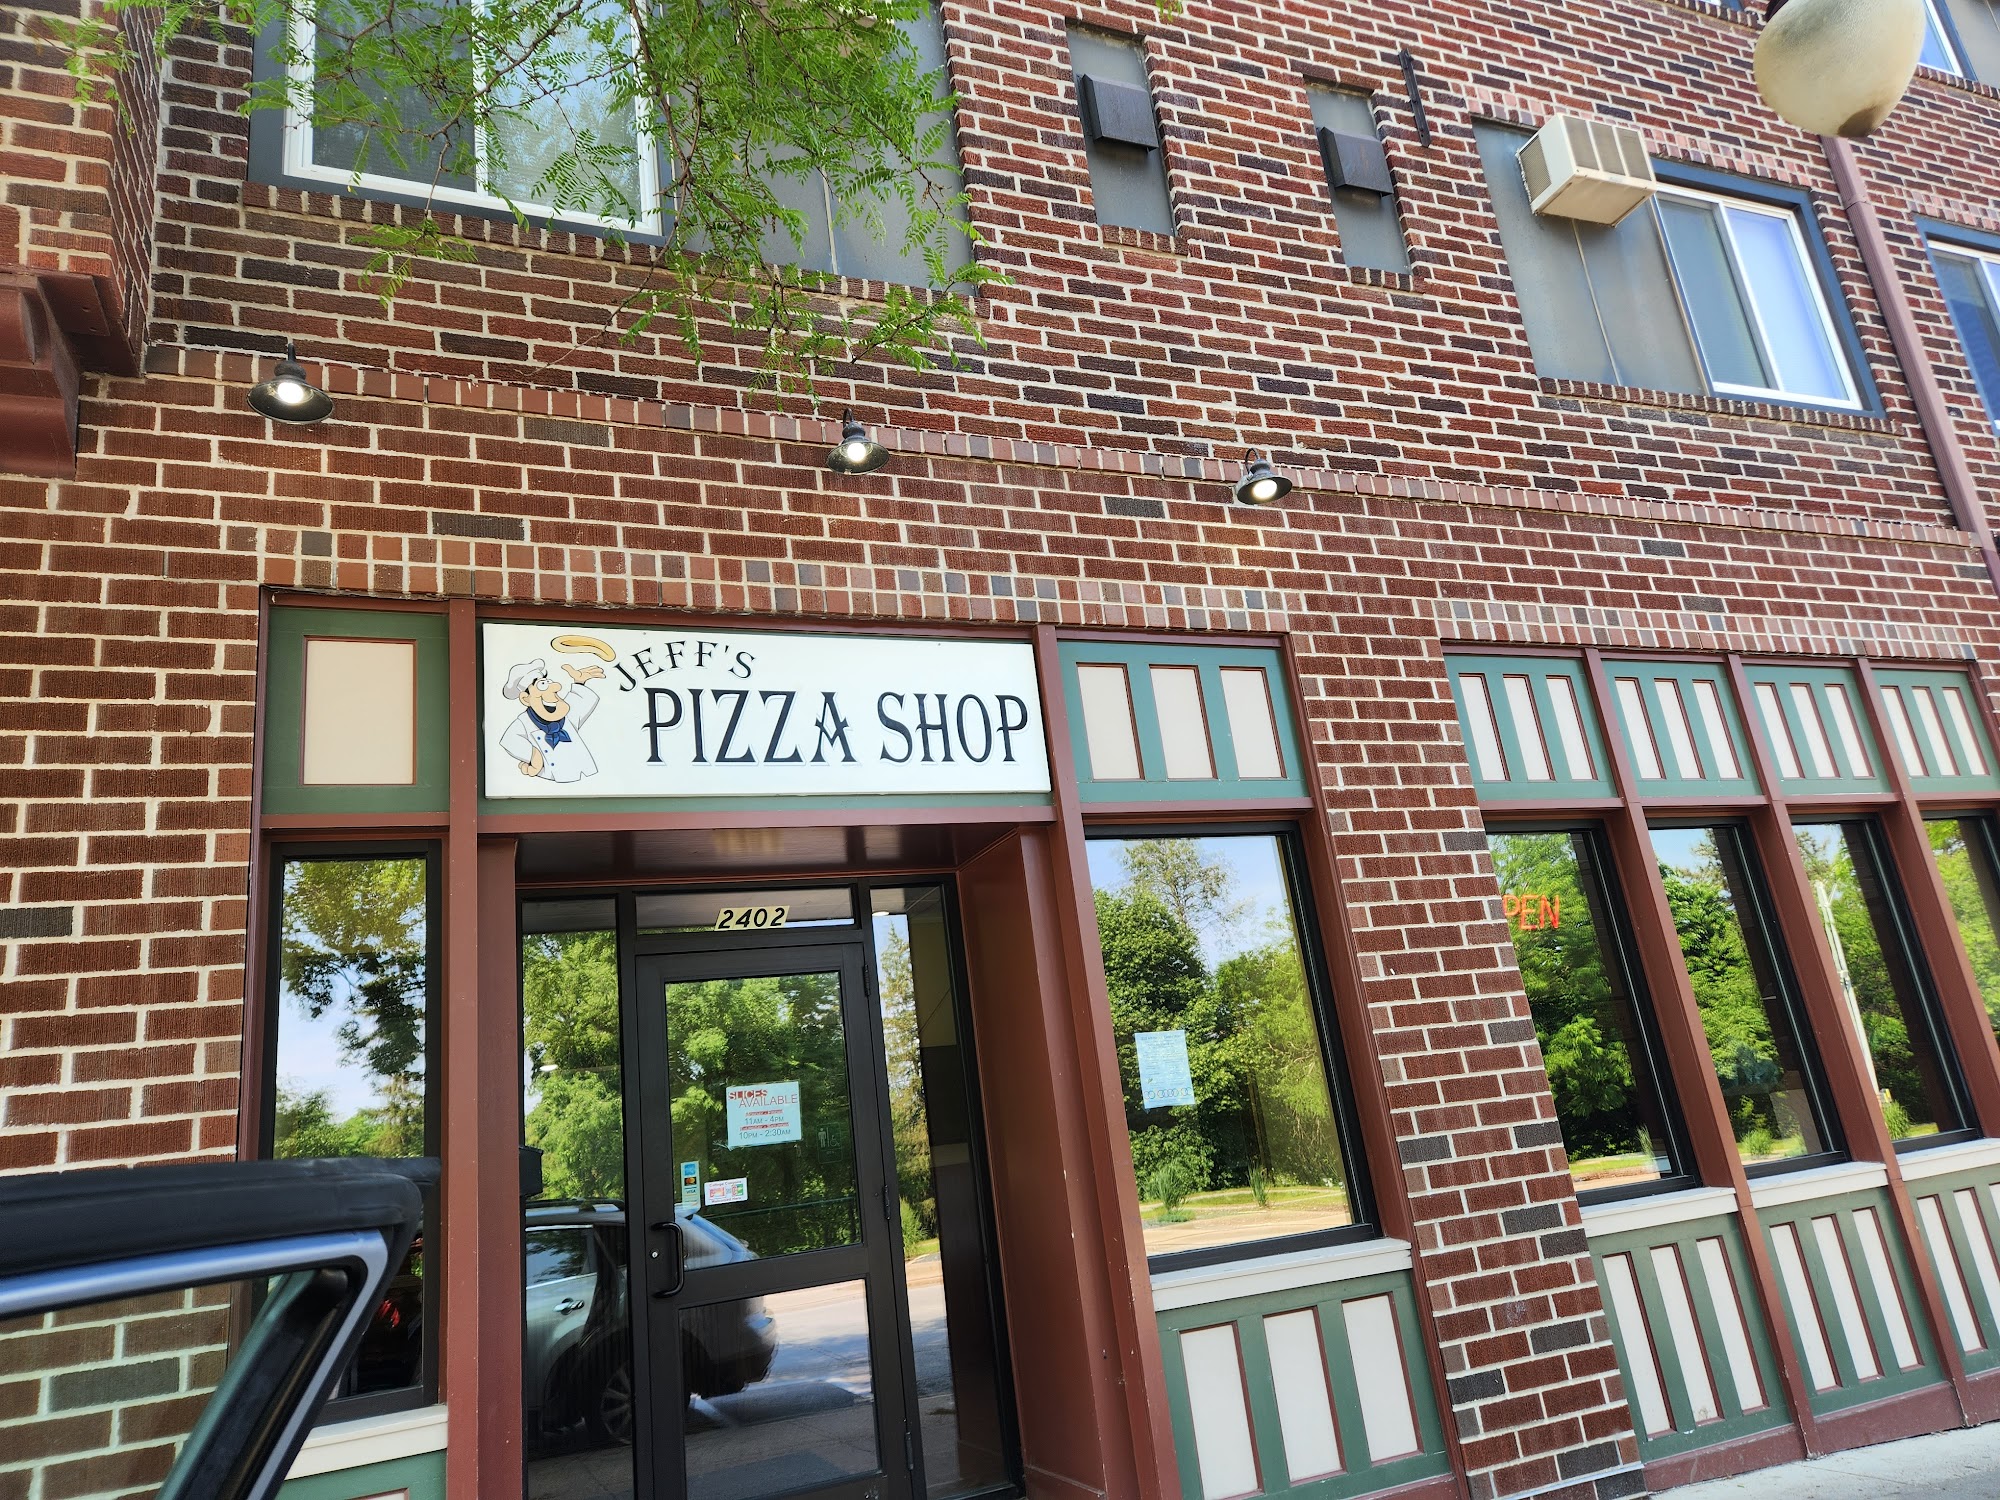 Jeff's Pizza Shop